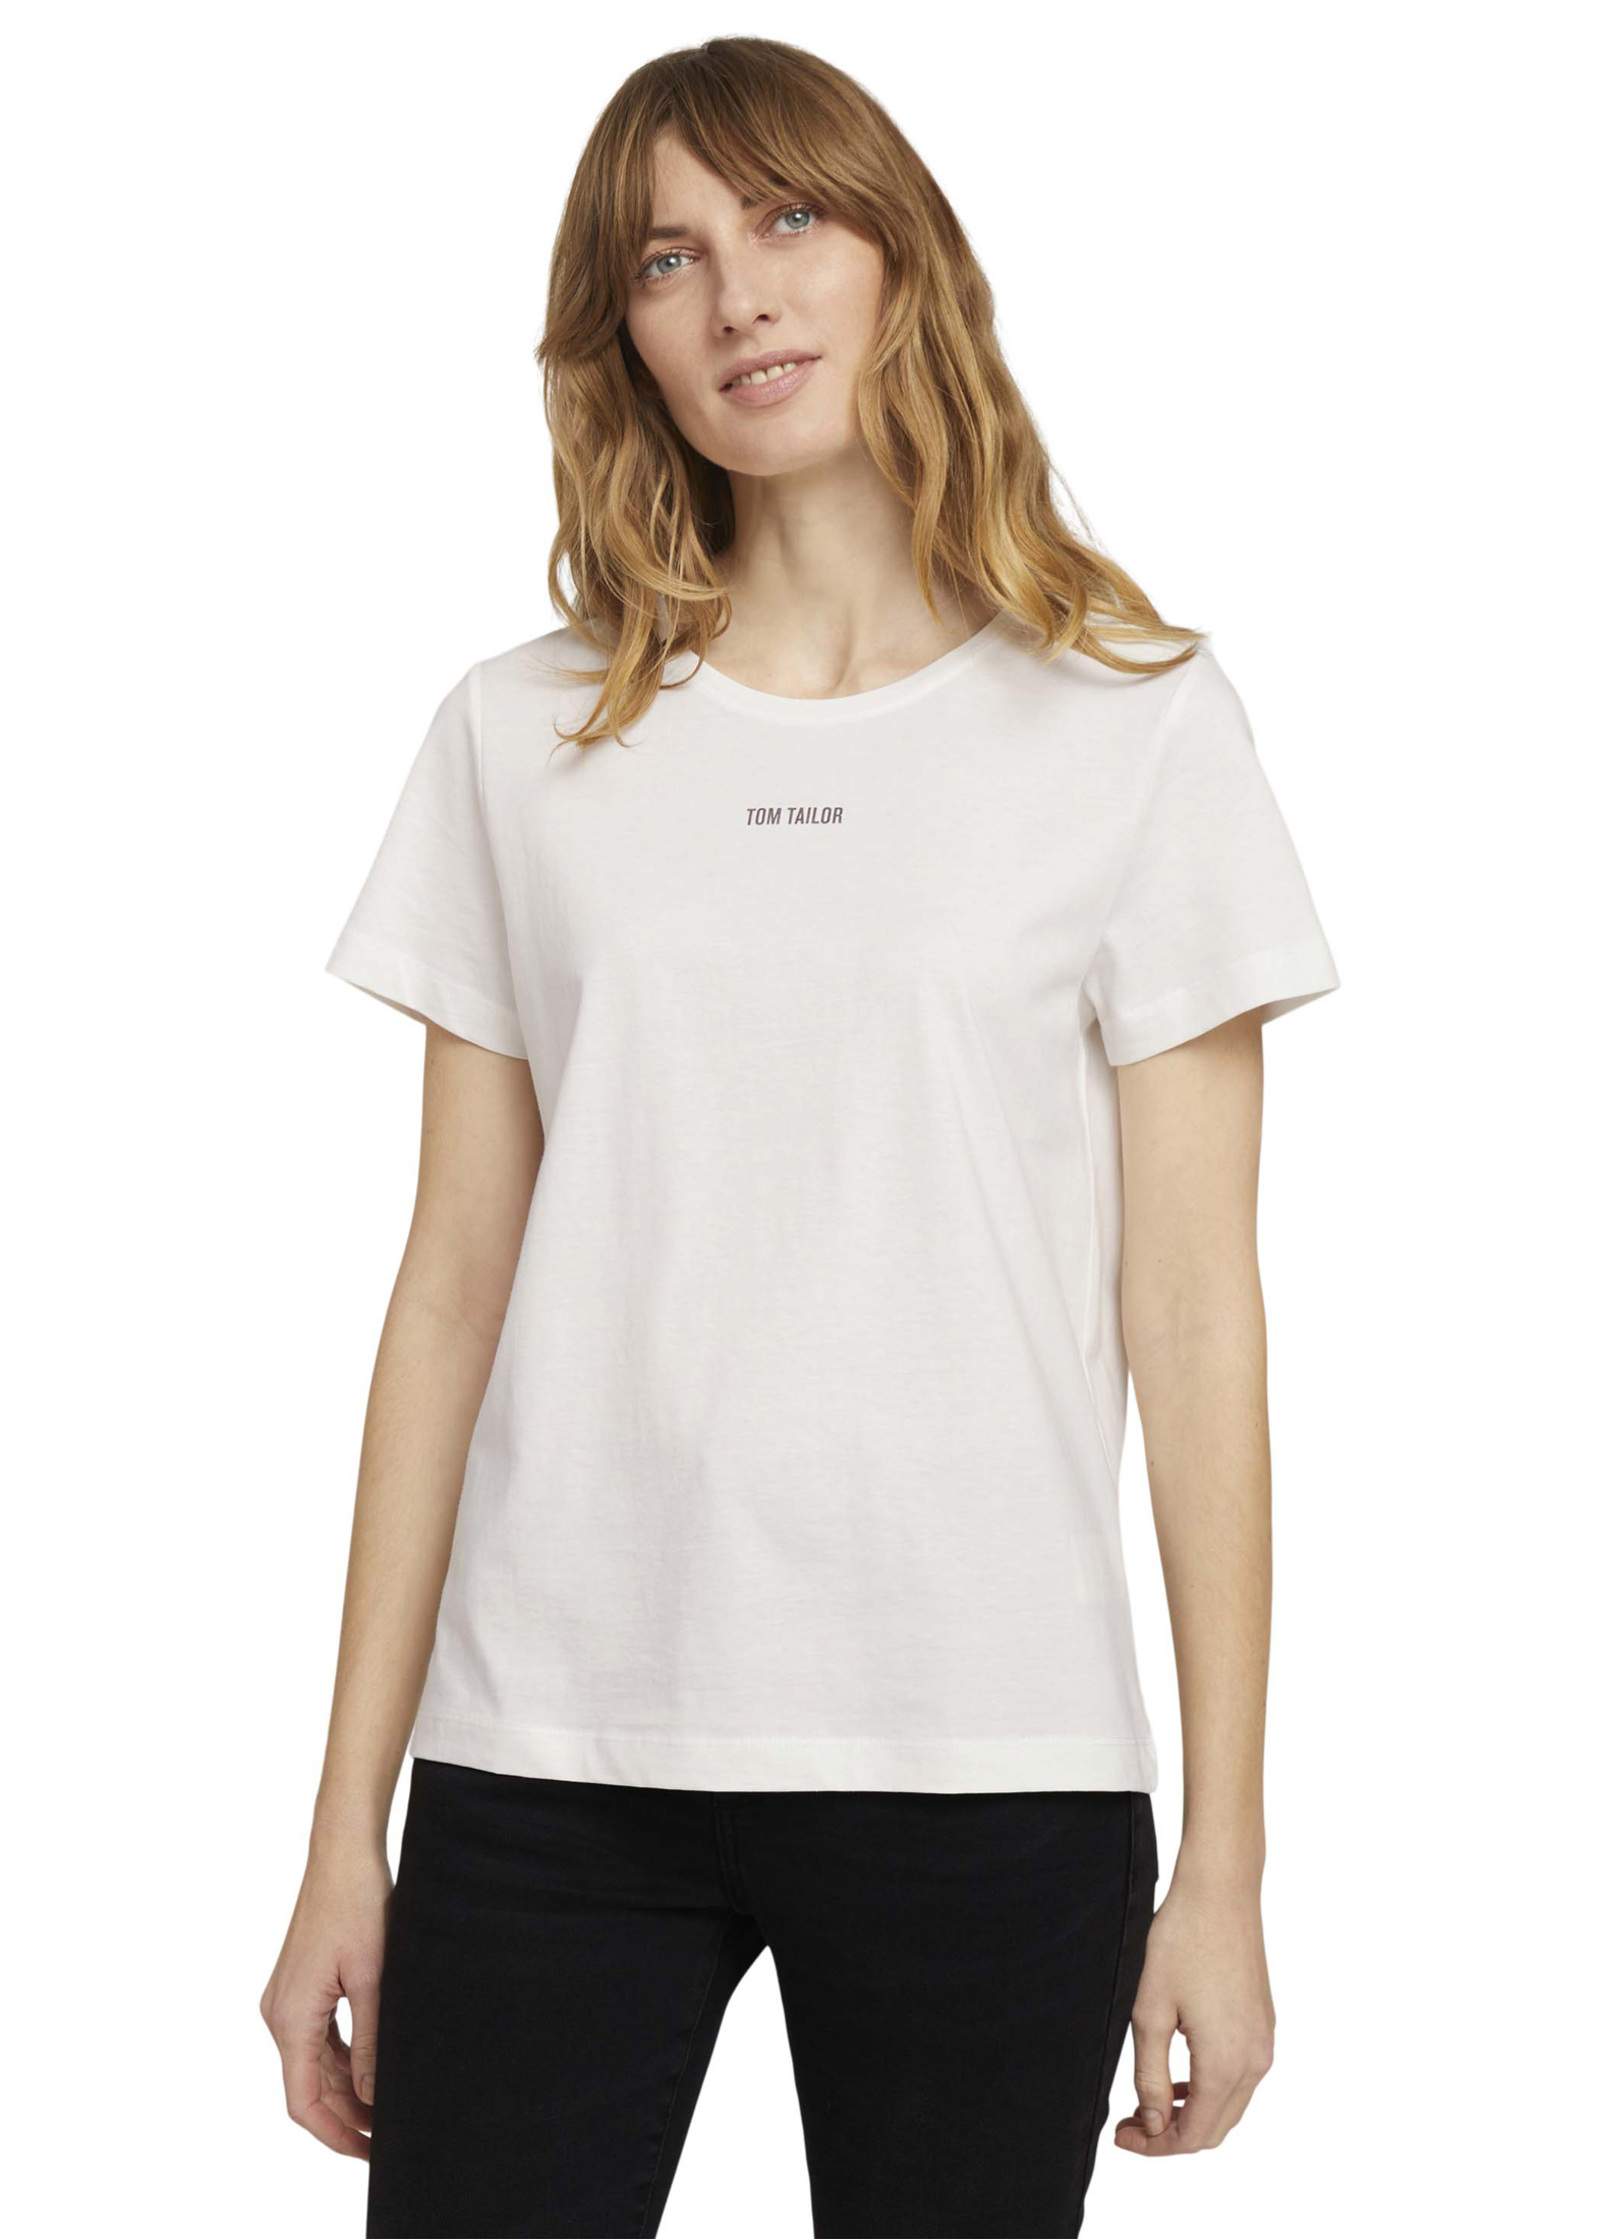 Tom Logo Tailor® Whisper Size - C-neck 3XL White Tshirt